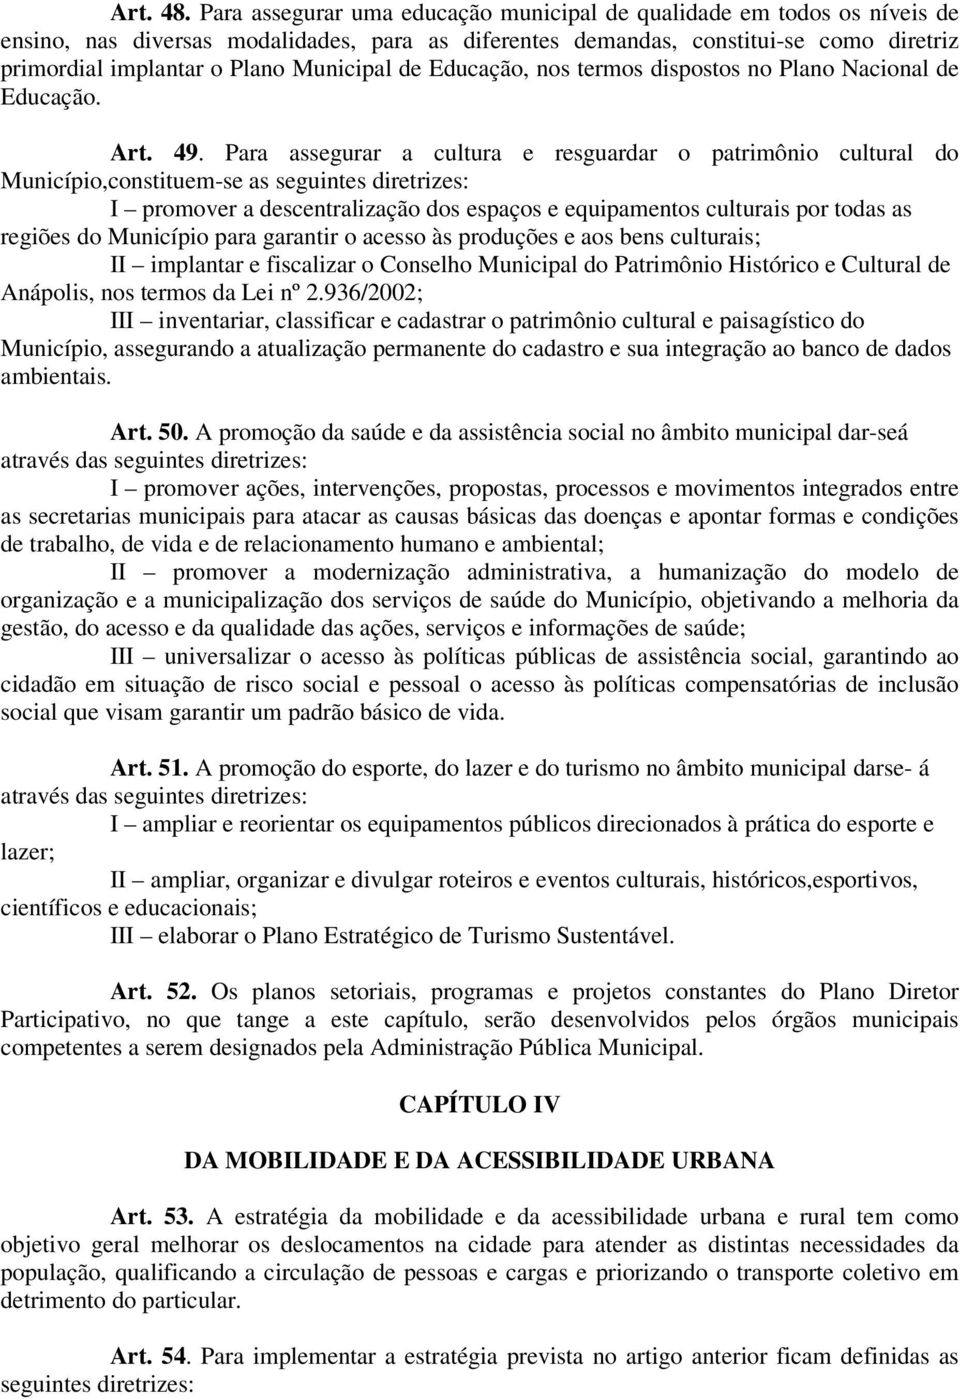 Municipal de Educação, nos termos dispostos no Plano Nacional de Educação. Art. 49.